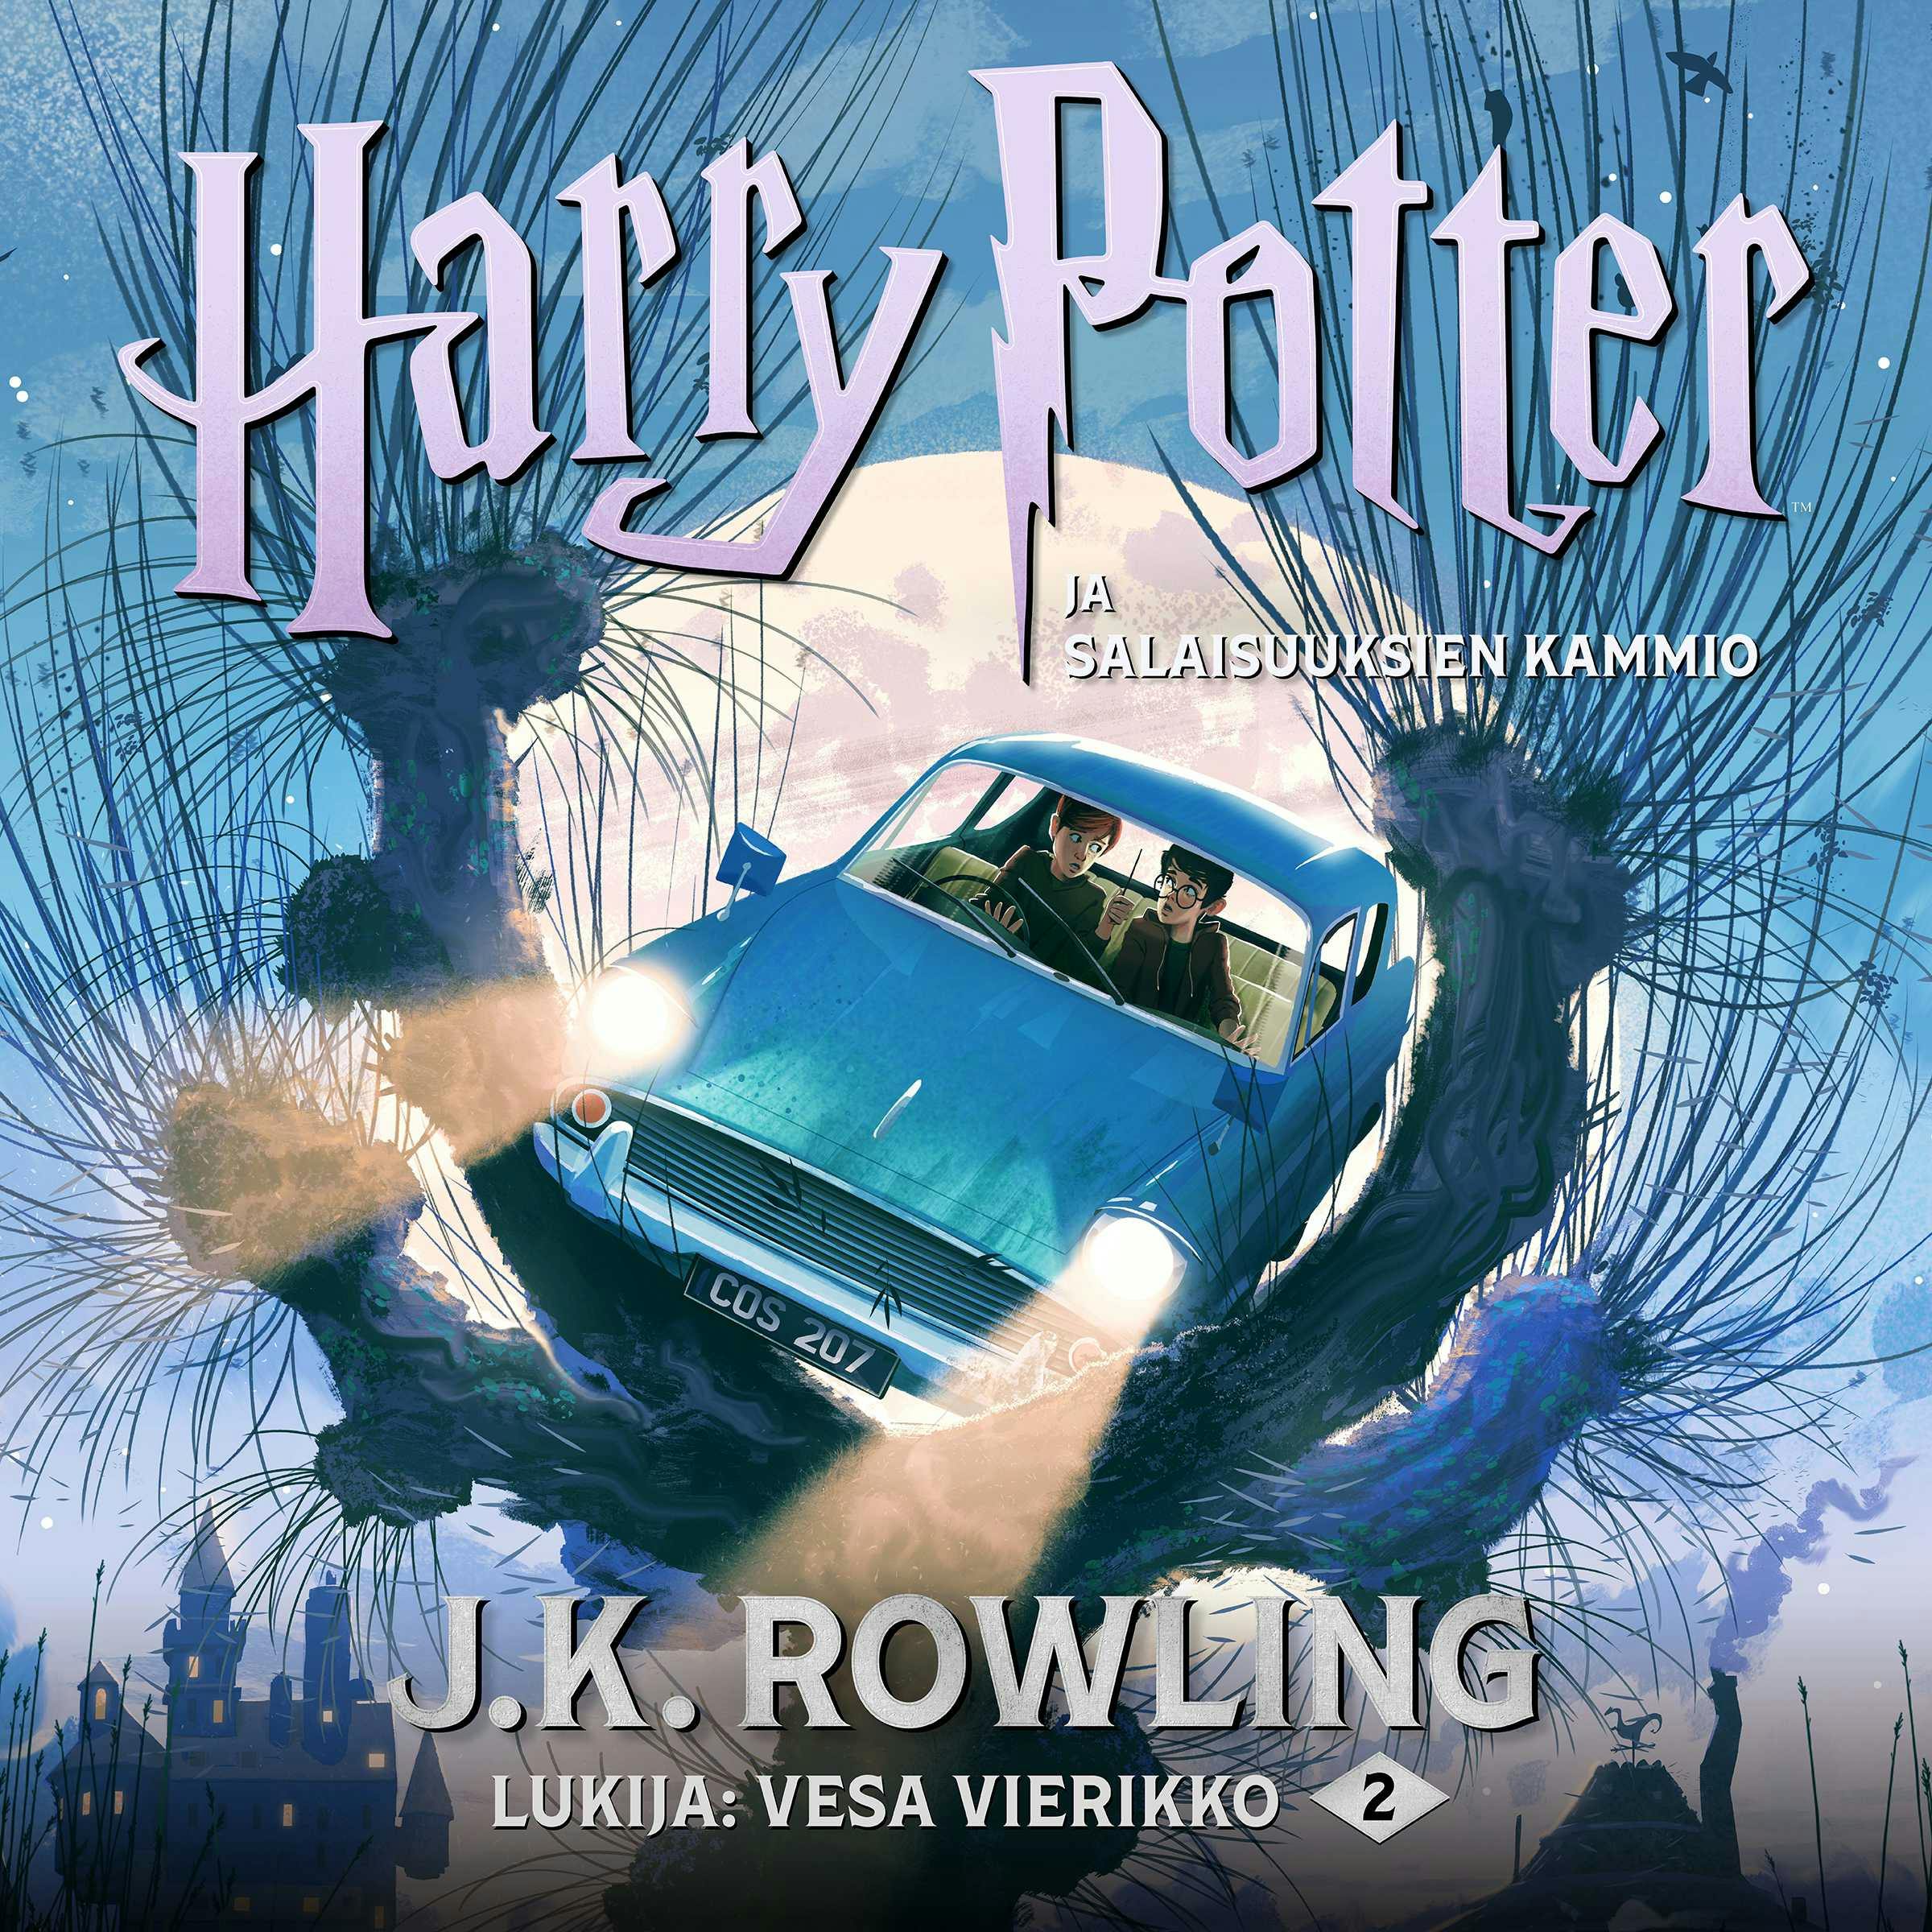 Harry Potter ja salaisuuksien kammio - undefined